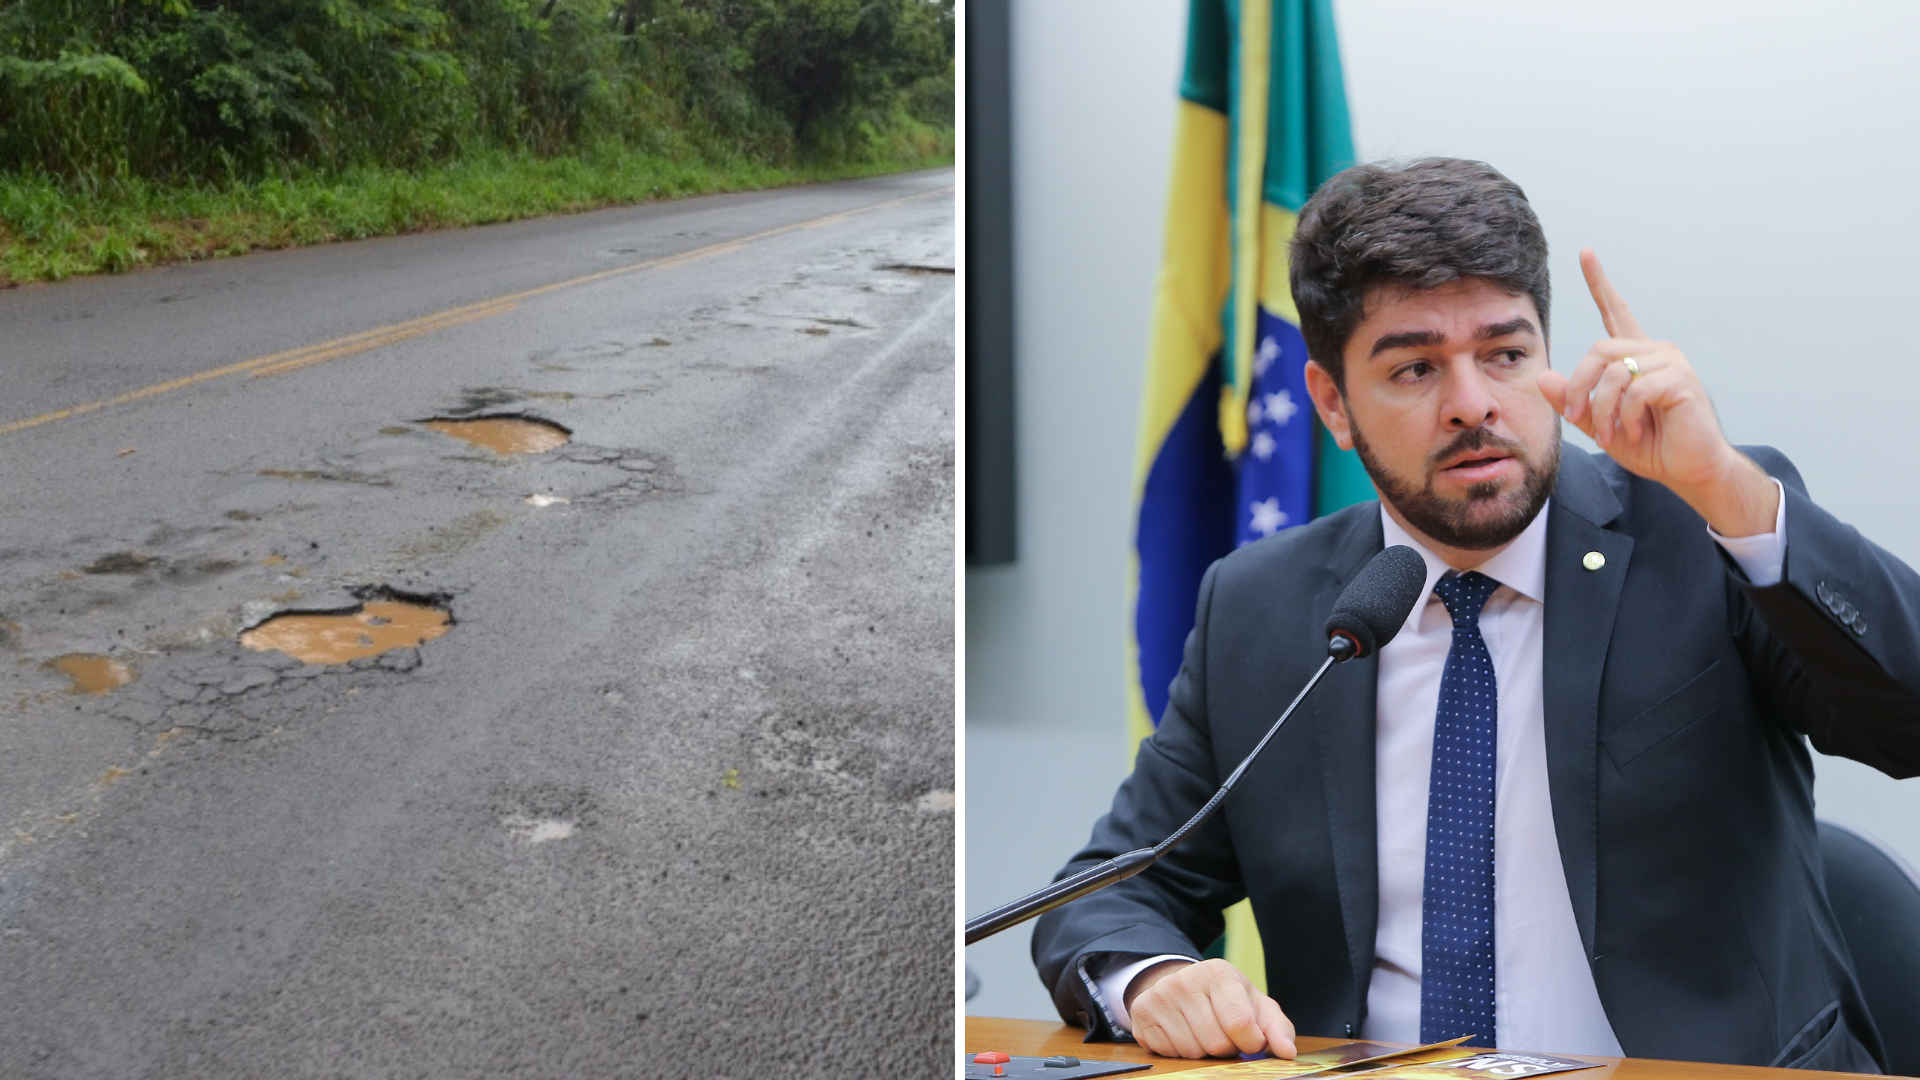 Rodovia BR-364: deputado federal Zé Vitor (PL-MG) anunciou que a o trecho entre Frutal e Planura teria estado de emergência decretado